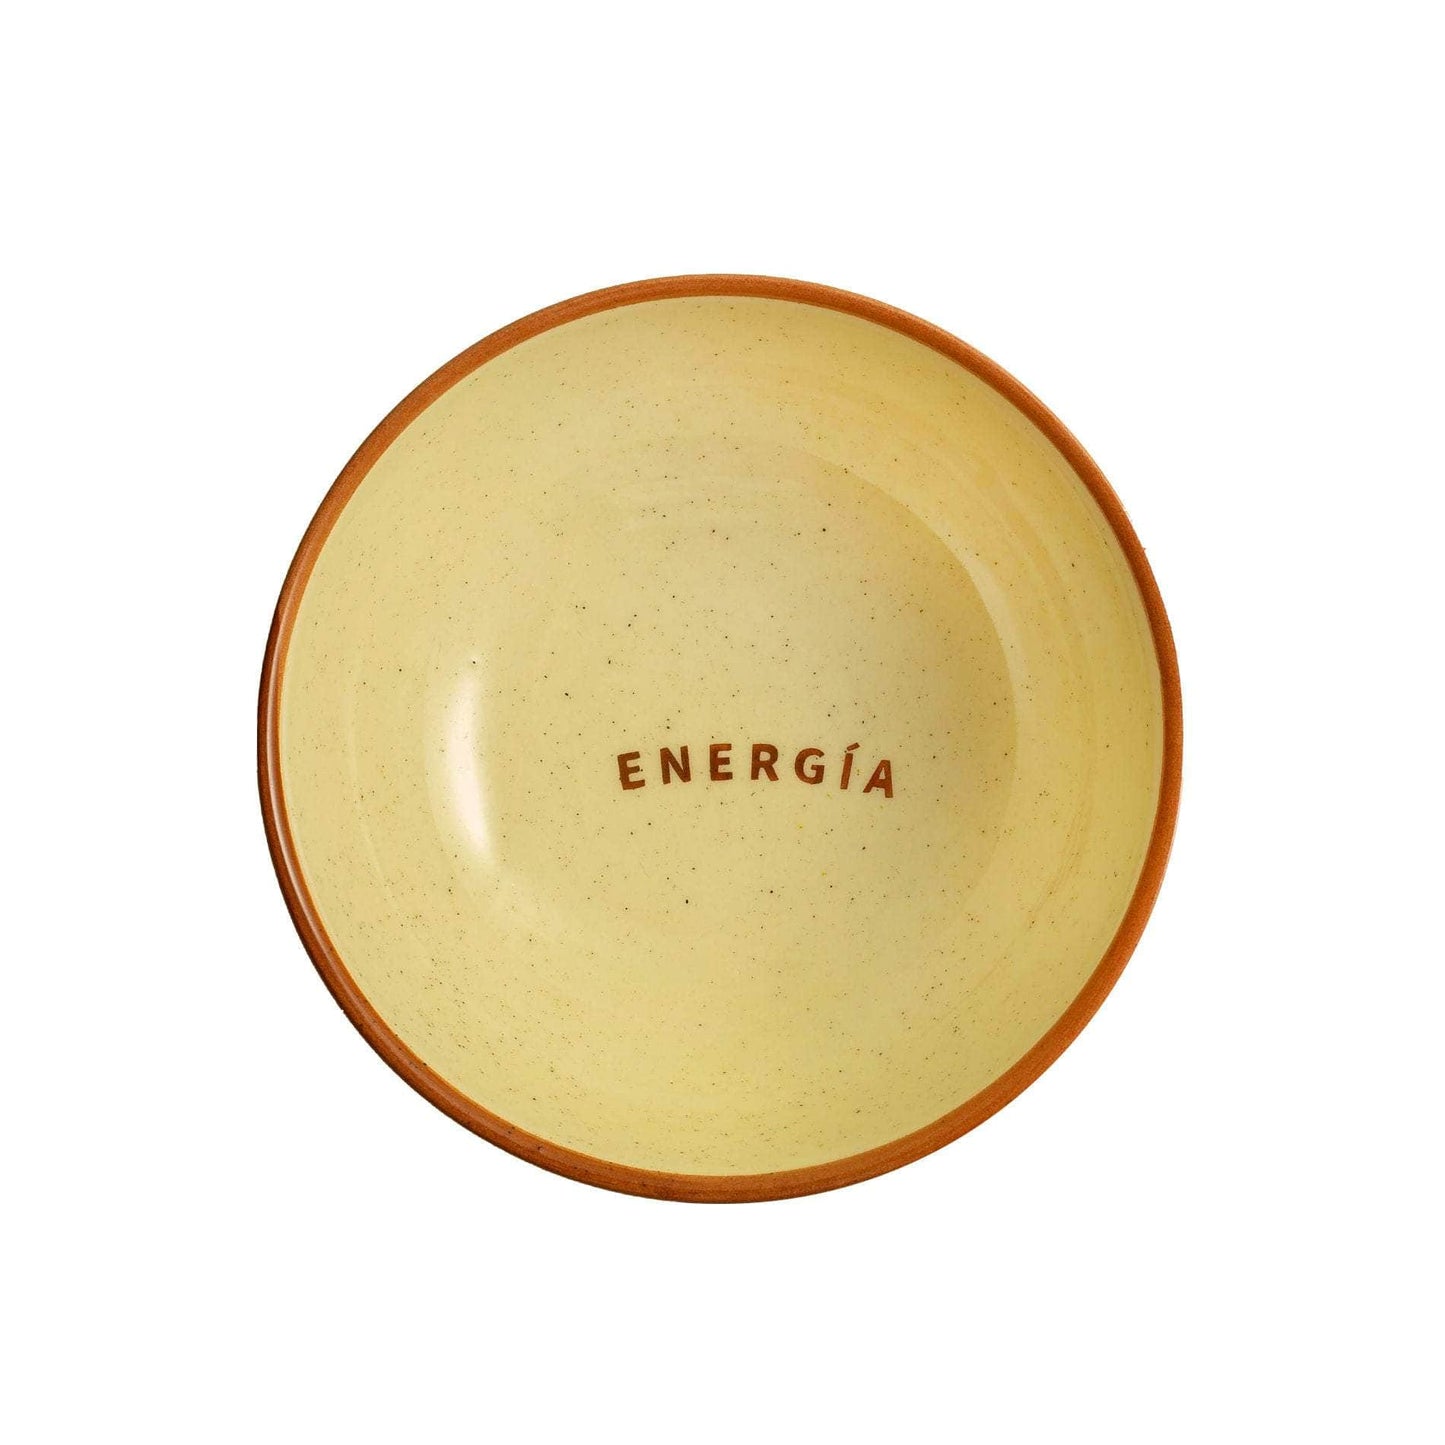 Energia "Energy" Bowl